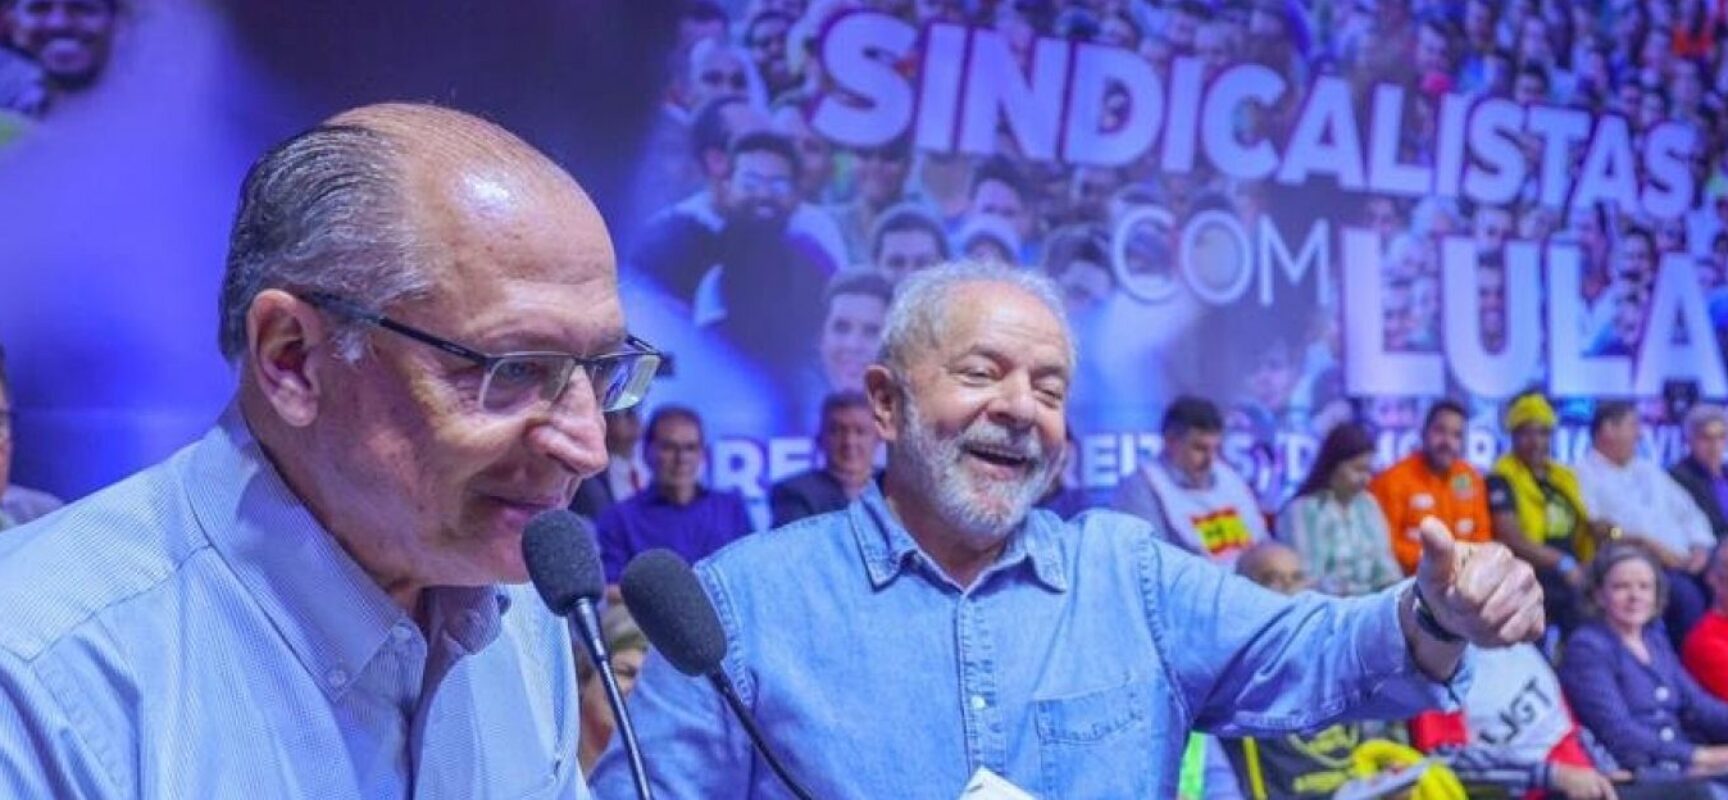 Grupo de pedetistas assina manifesto contra Ciro, em apoio a Lula contra Bolsonaro